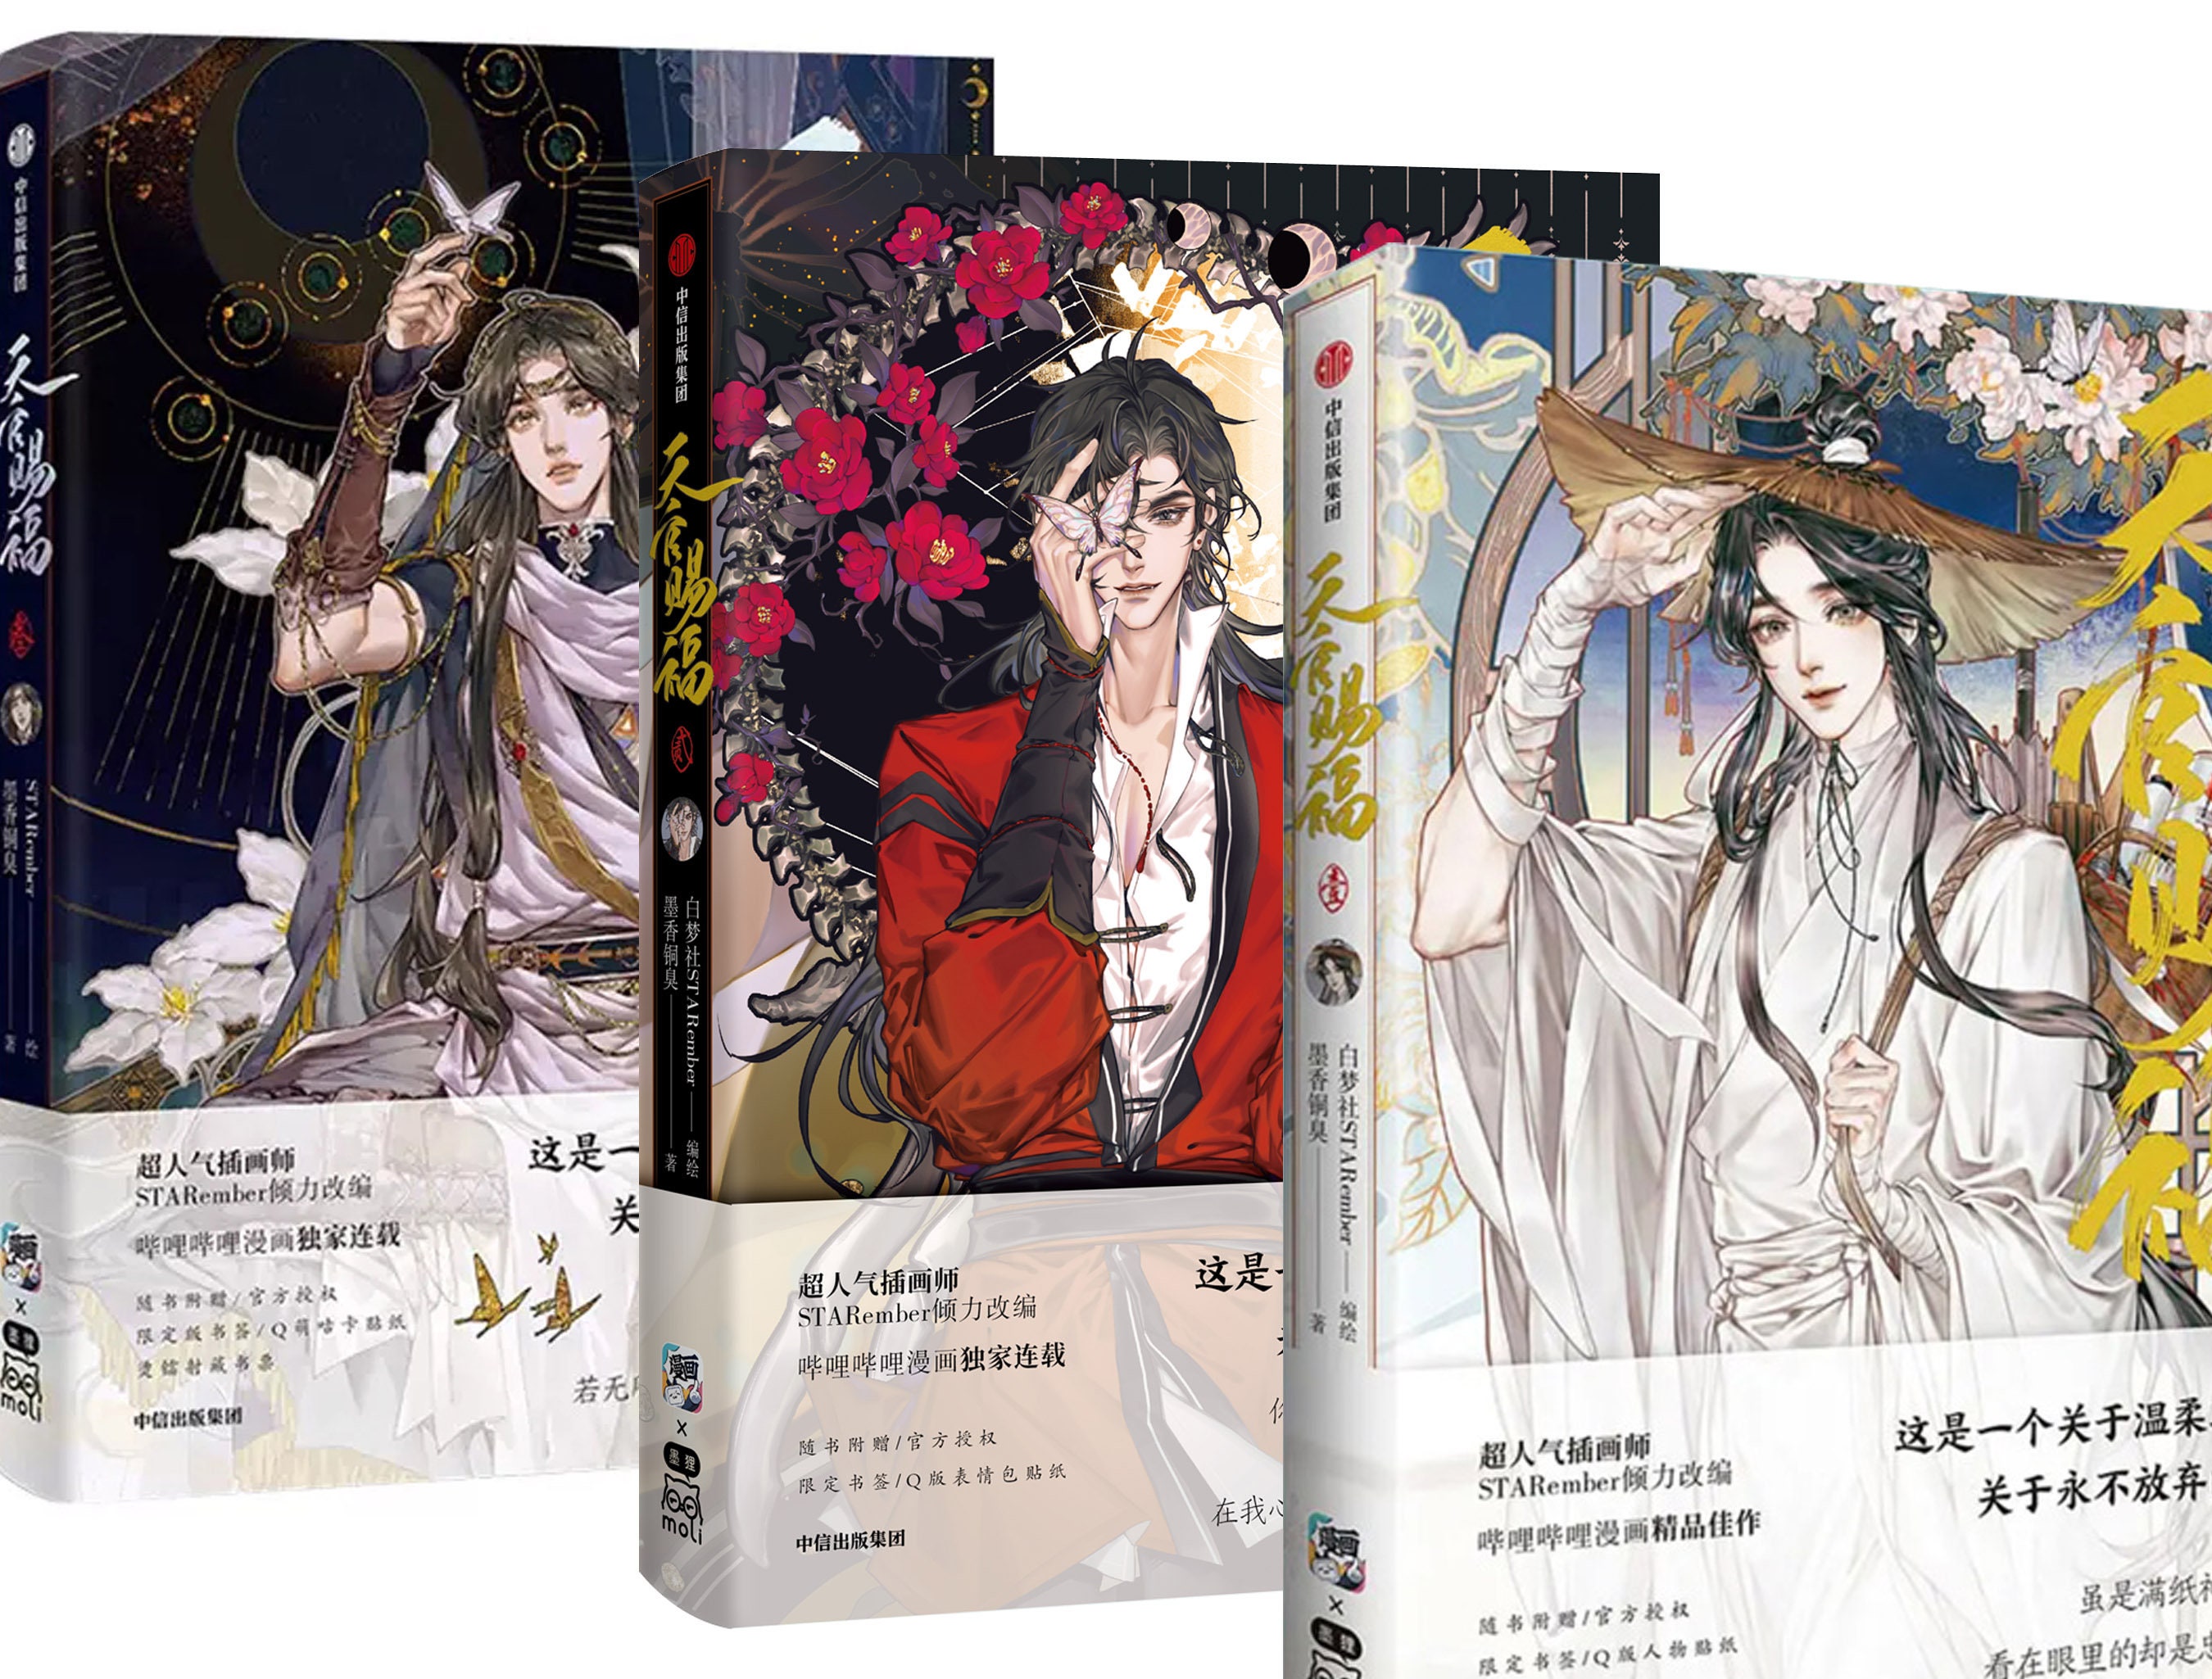 BL Novel Tian Guan Ci Fu Hua Cheng San Lang Xie Lian Doujin Starry Film  Colored Paper Anime Donghua Heaven Officials Blessing